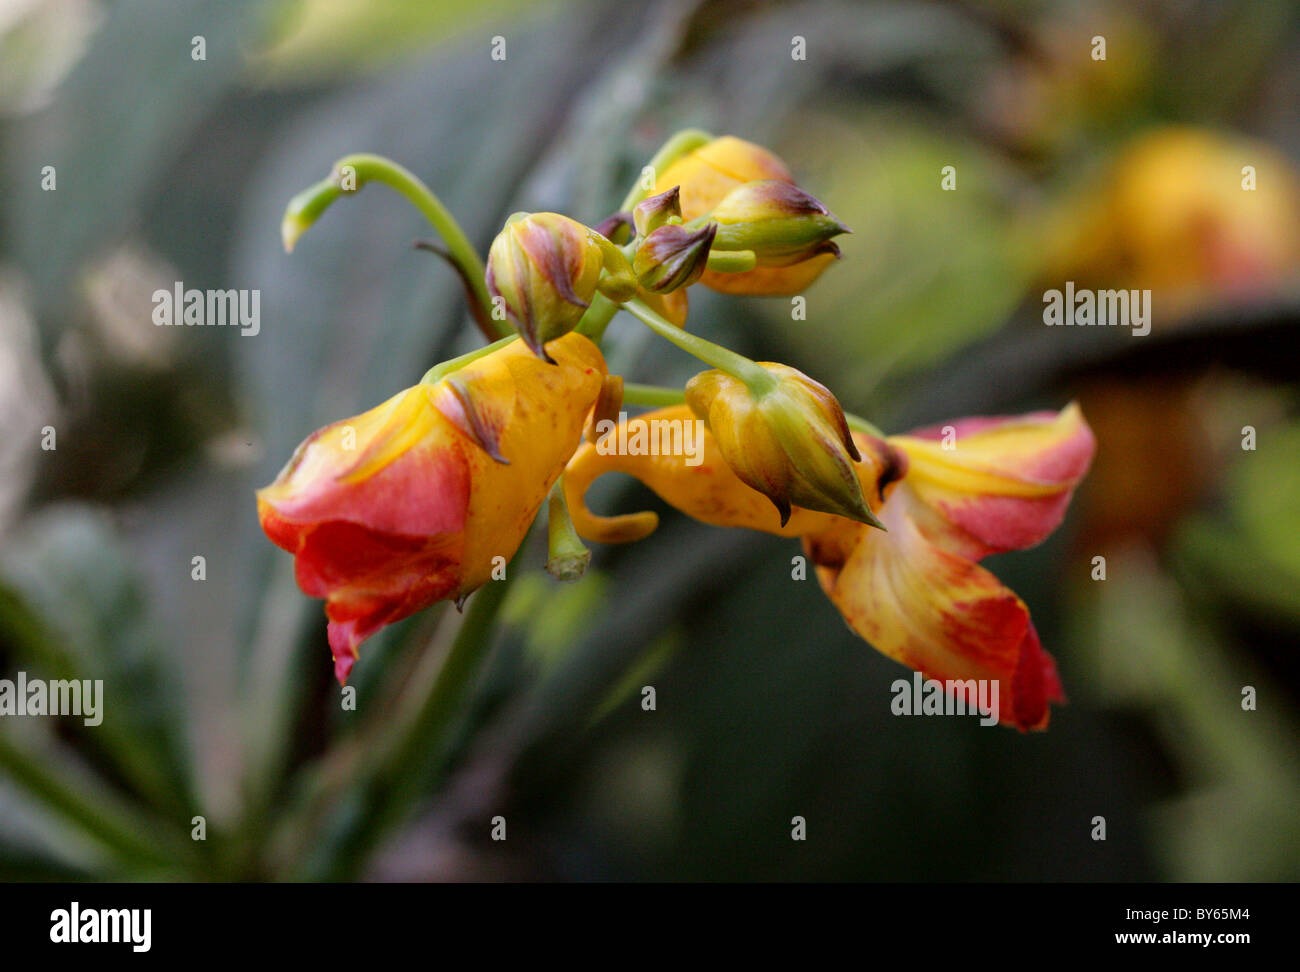 Balsam, Impatiens balansae, Balsaminaceae, China and Vietnam. Stock Photo